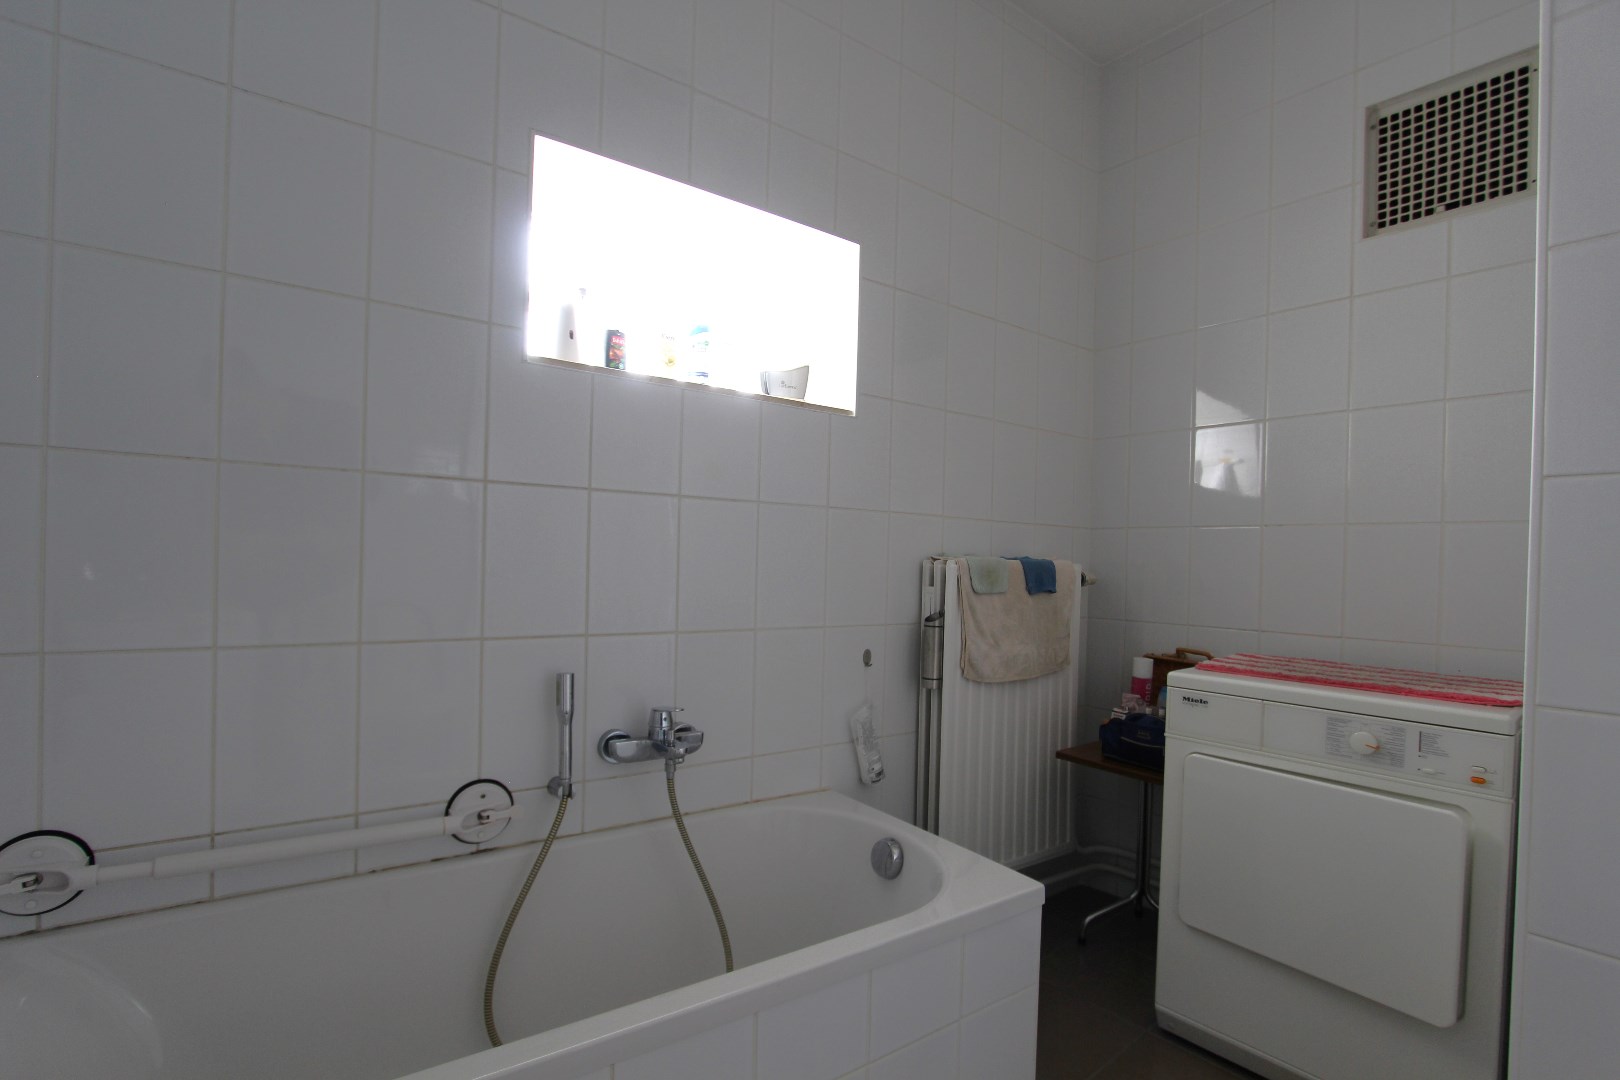 Badkamer uitgerust met ligbad en lavabo